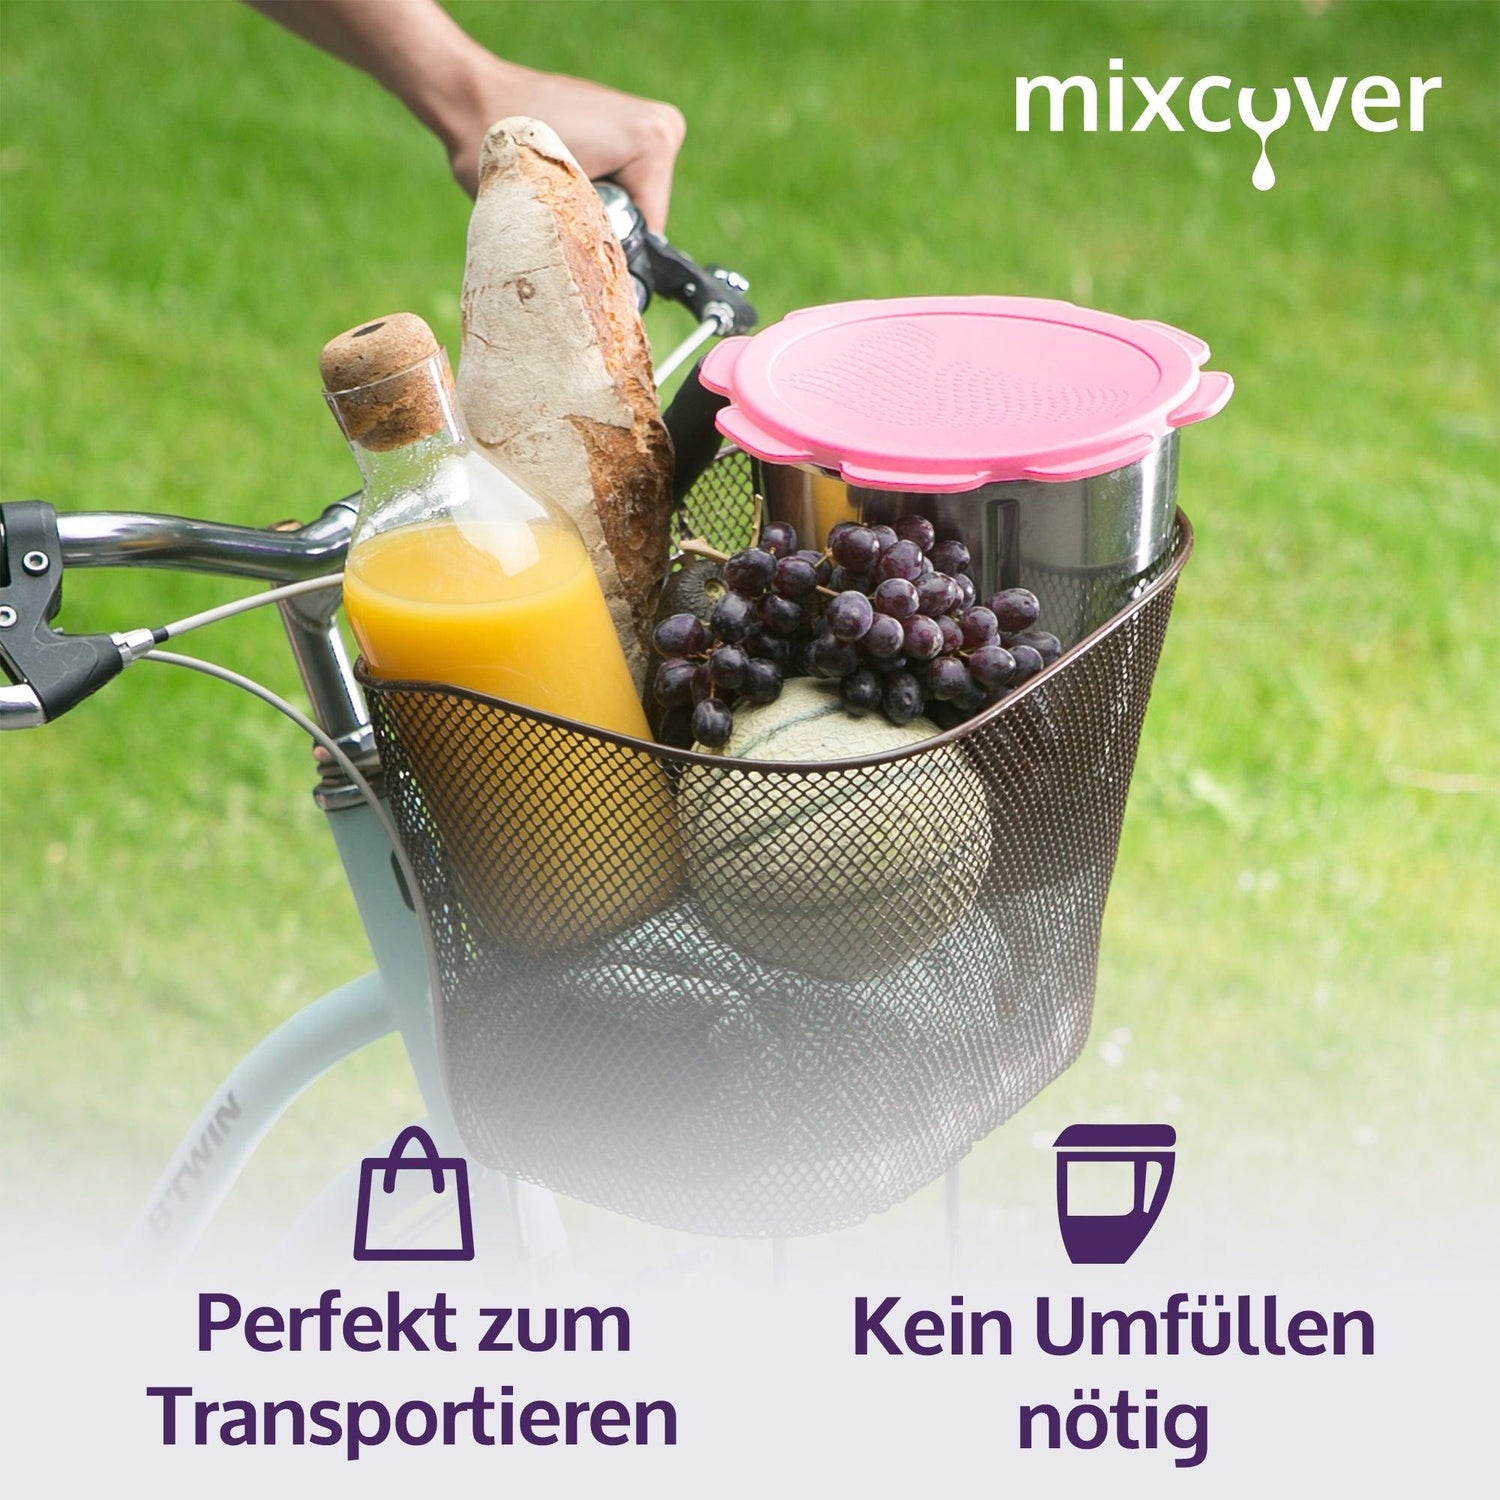 mixcover Silikon Deckel wasser- & geruchsdicht für Thermomix TM5 TM6 Friend Pink - Mixcover - Mixcover